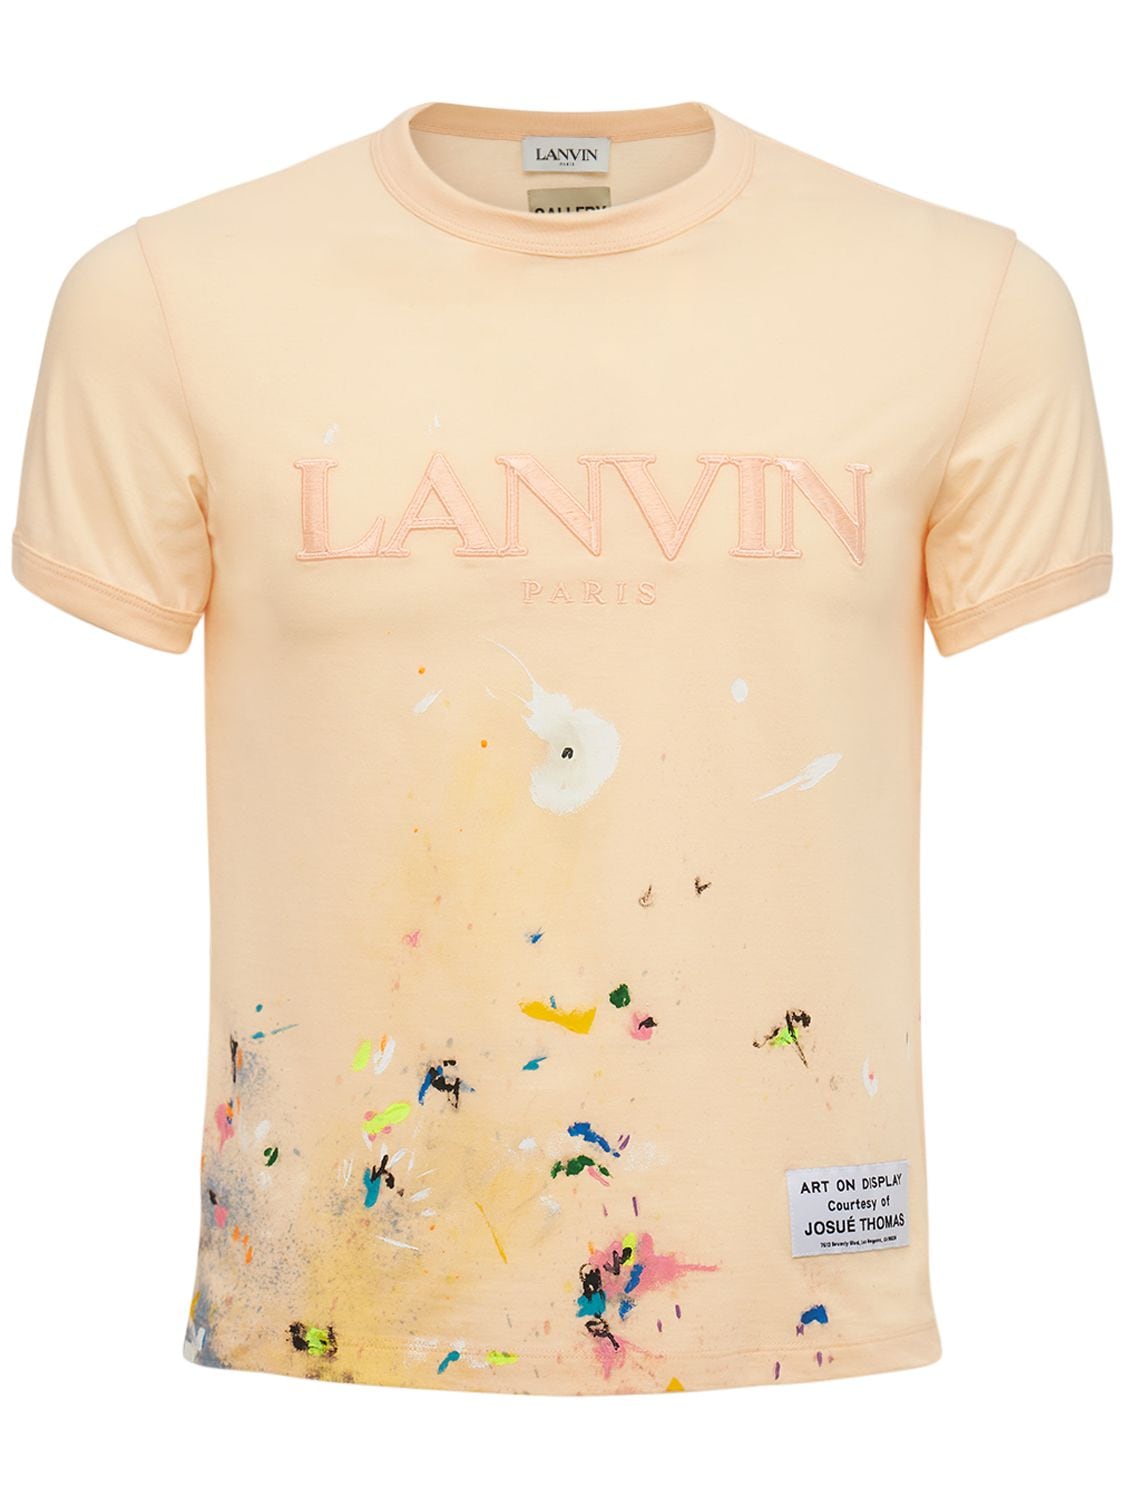 Handbemaltes T-shirt - GALLERY DEPT X LANVIN - Modalova